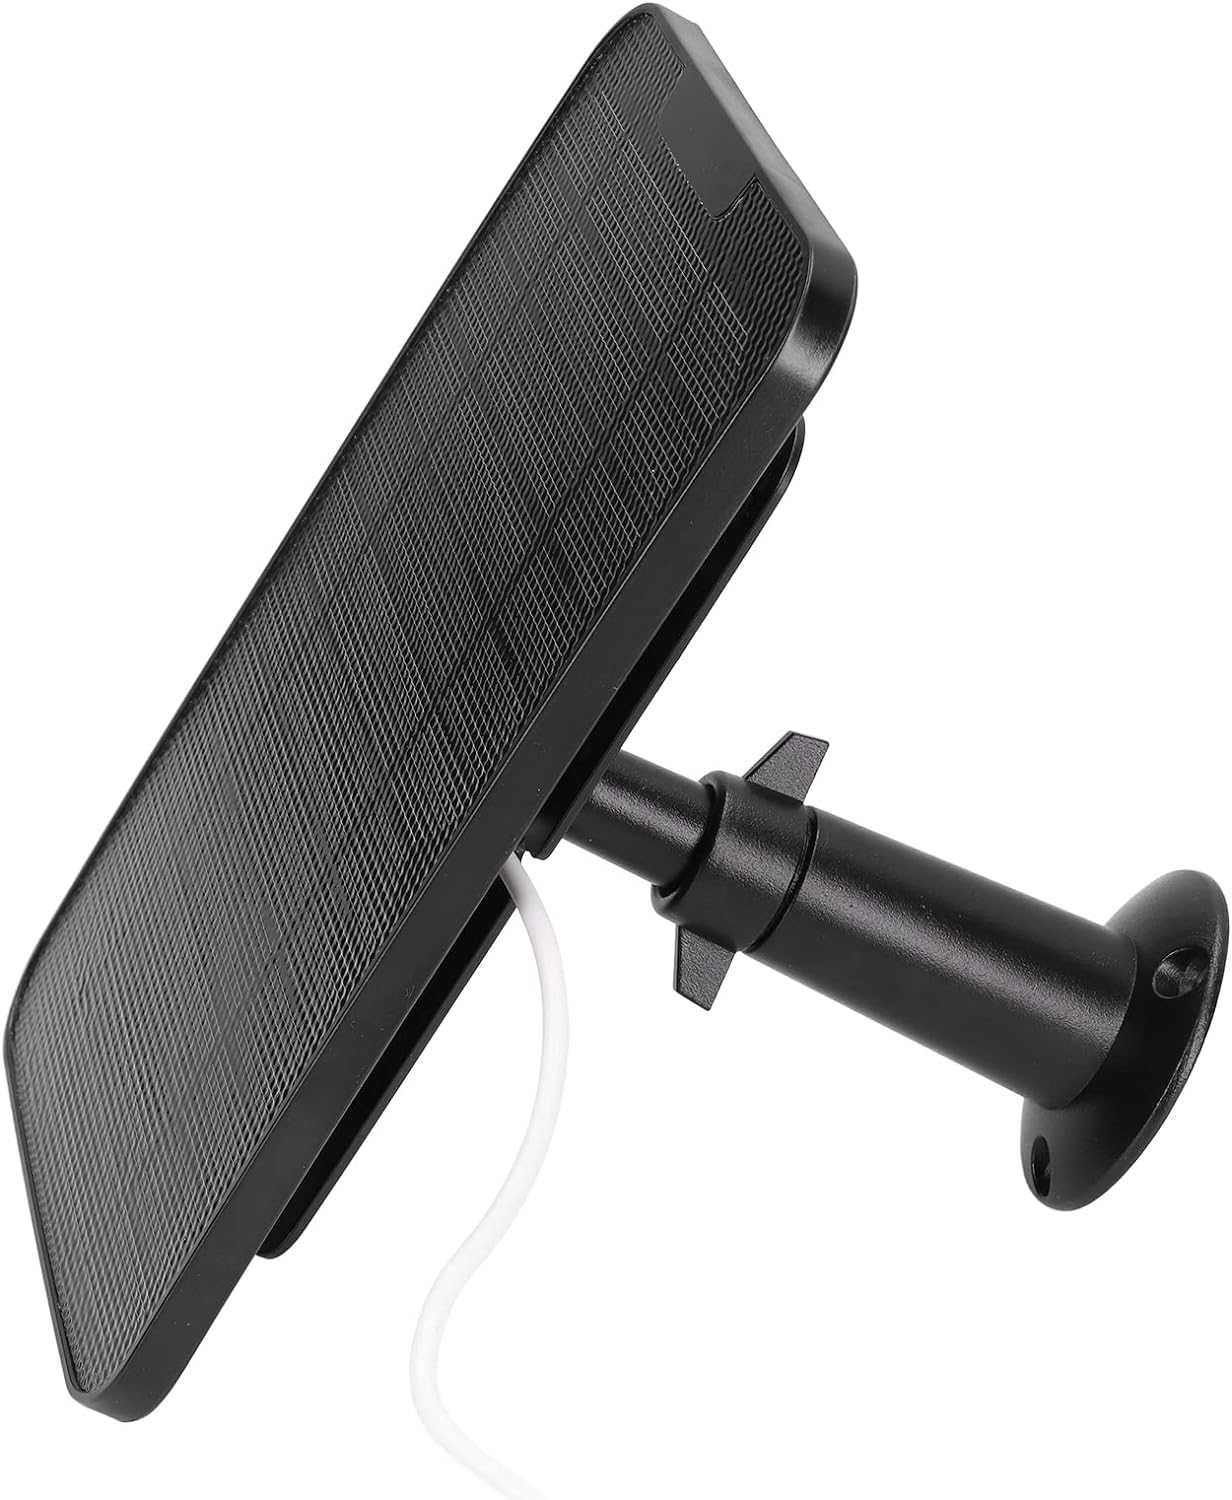 Panel solarny 4 W panel słoneczny do zasilania kamer kabel microUSB